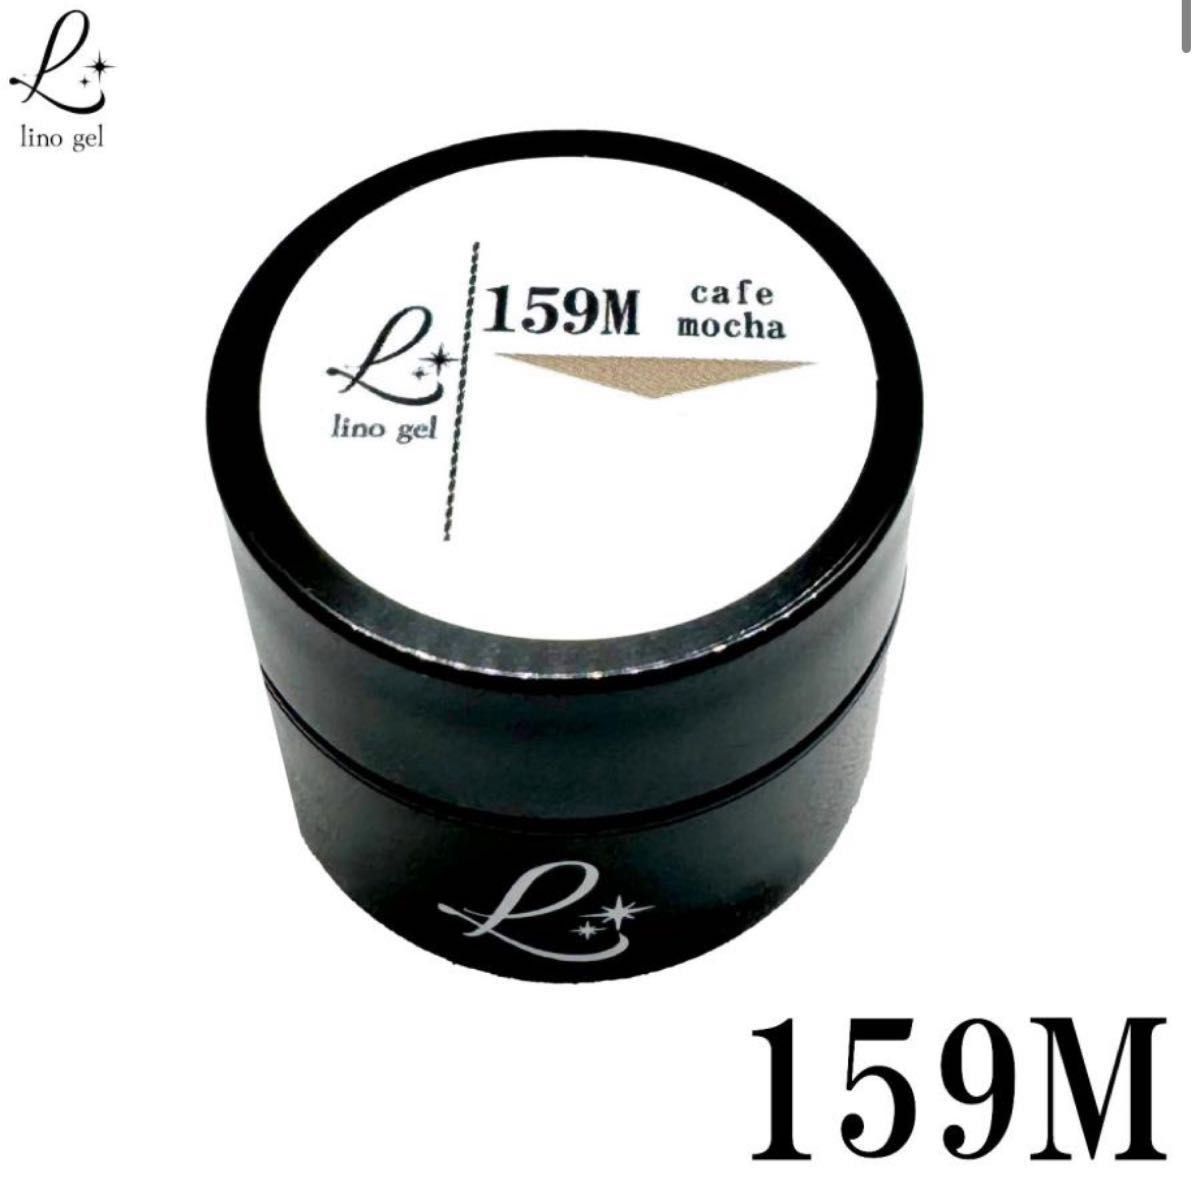 LinoGel リノジェル カラージェル 5g LED/UVライト対応 159M カフェモカ cafe mocha プロフェショ